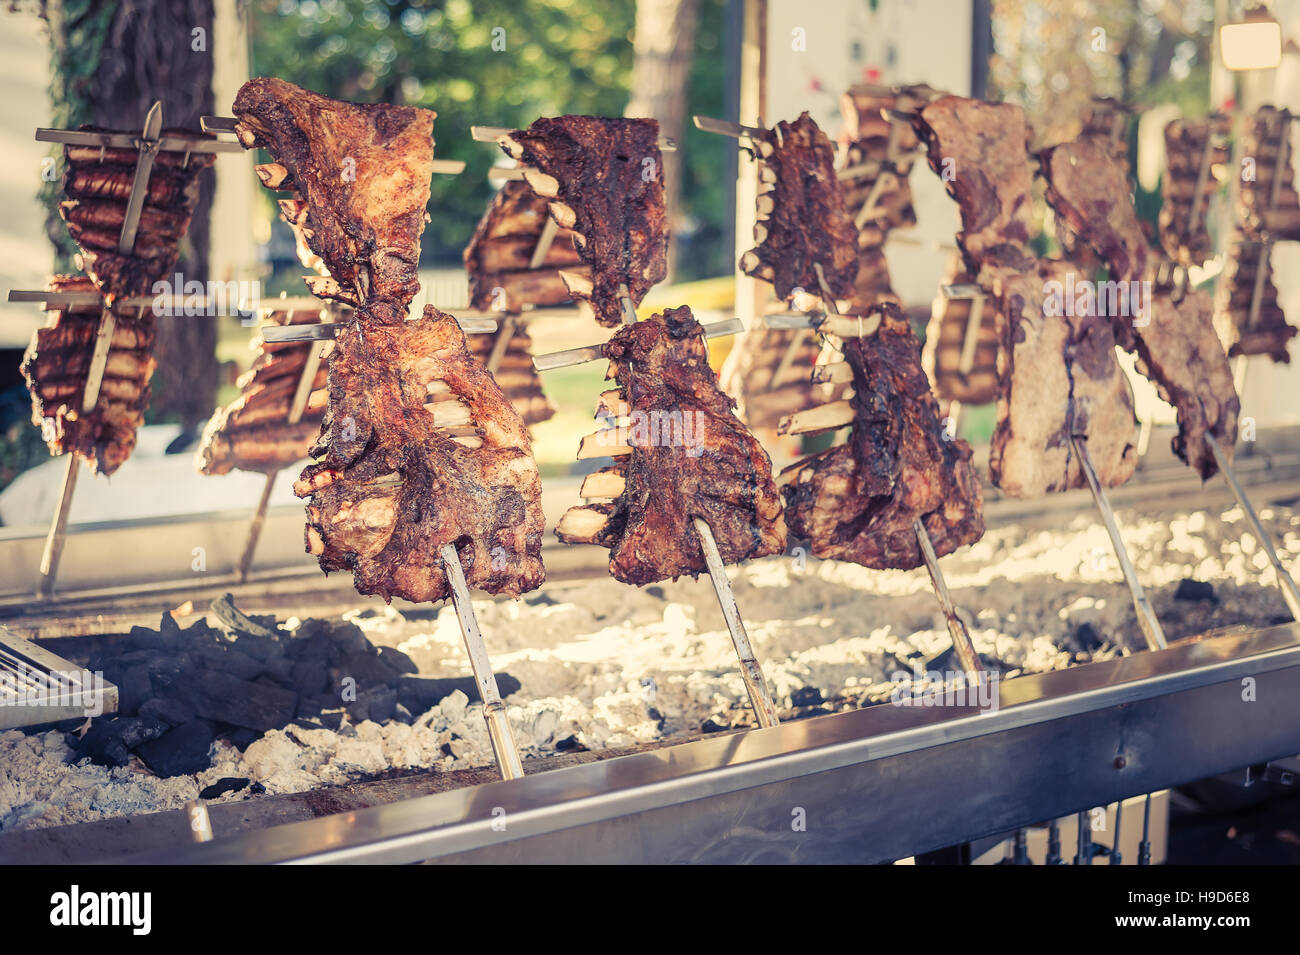 Asado, barbecue tradizionale piatto in Argentina, carne arrosto di manzo cotta su griglie verticali collocati intorno al fuoco. Look vintage Foto Stock